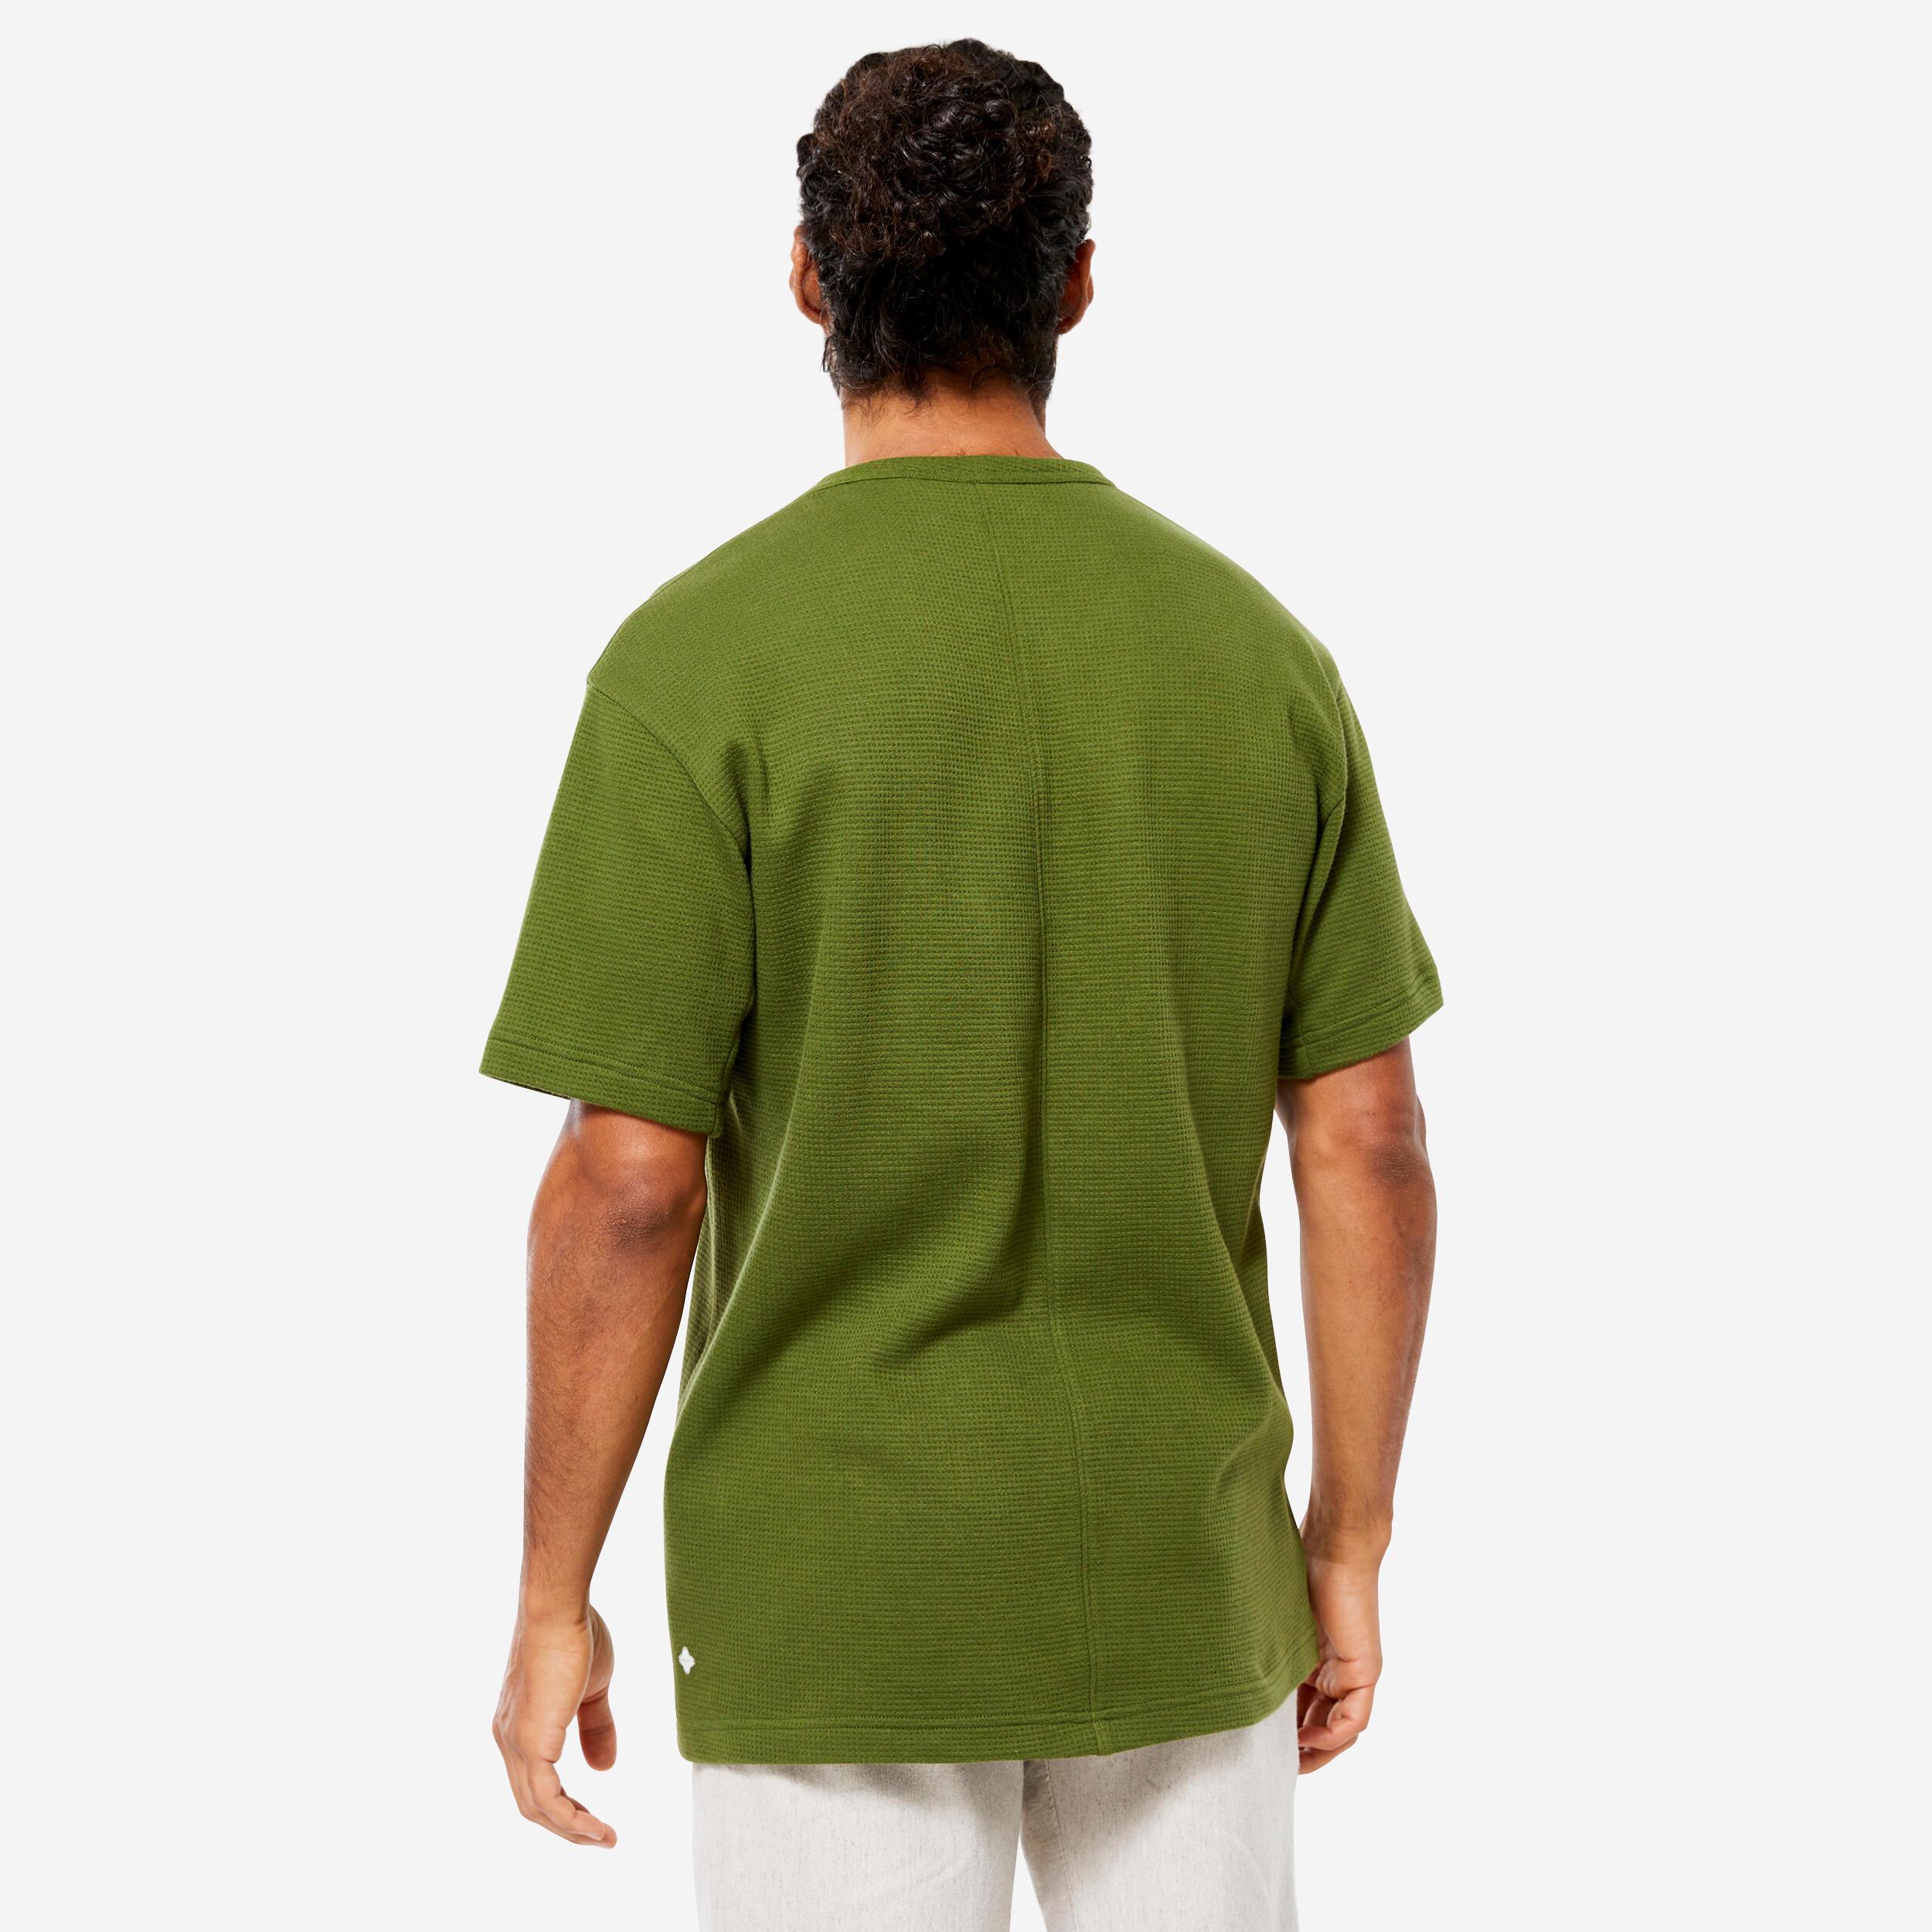 KIMJALY  T-shirt manches courtes - BASIC 